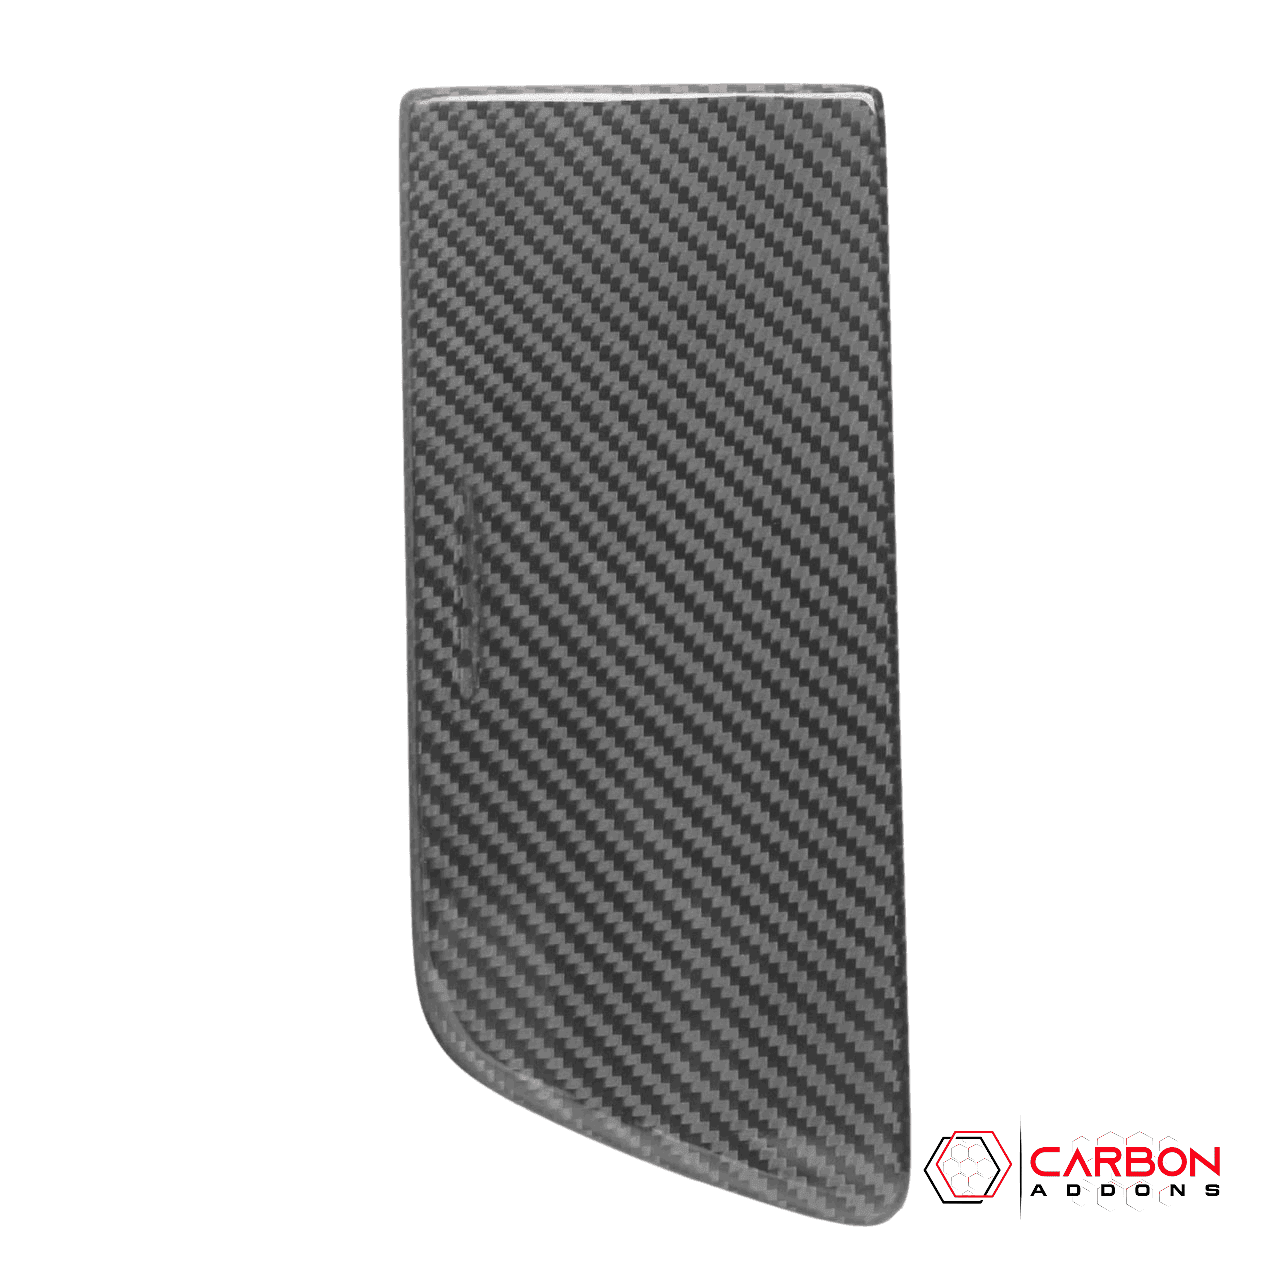 C7 Corvette 2014-2019 Carbon Fiber Center Console Storage Compartment Cover - carbonaddons Carbon Fiber Parts, Accessories, Upgrades, Mods